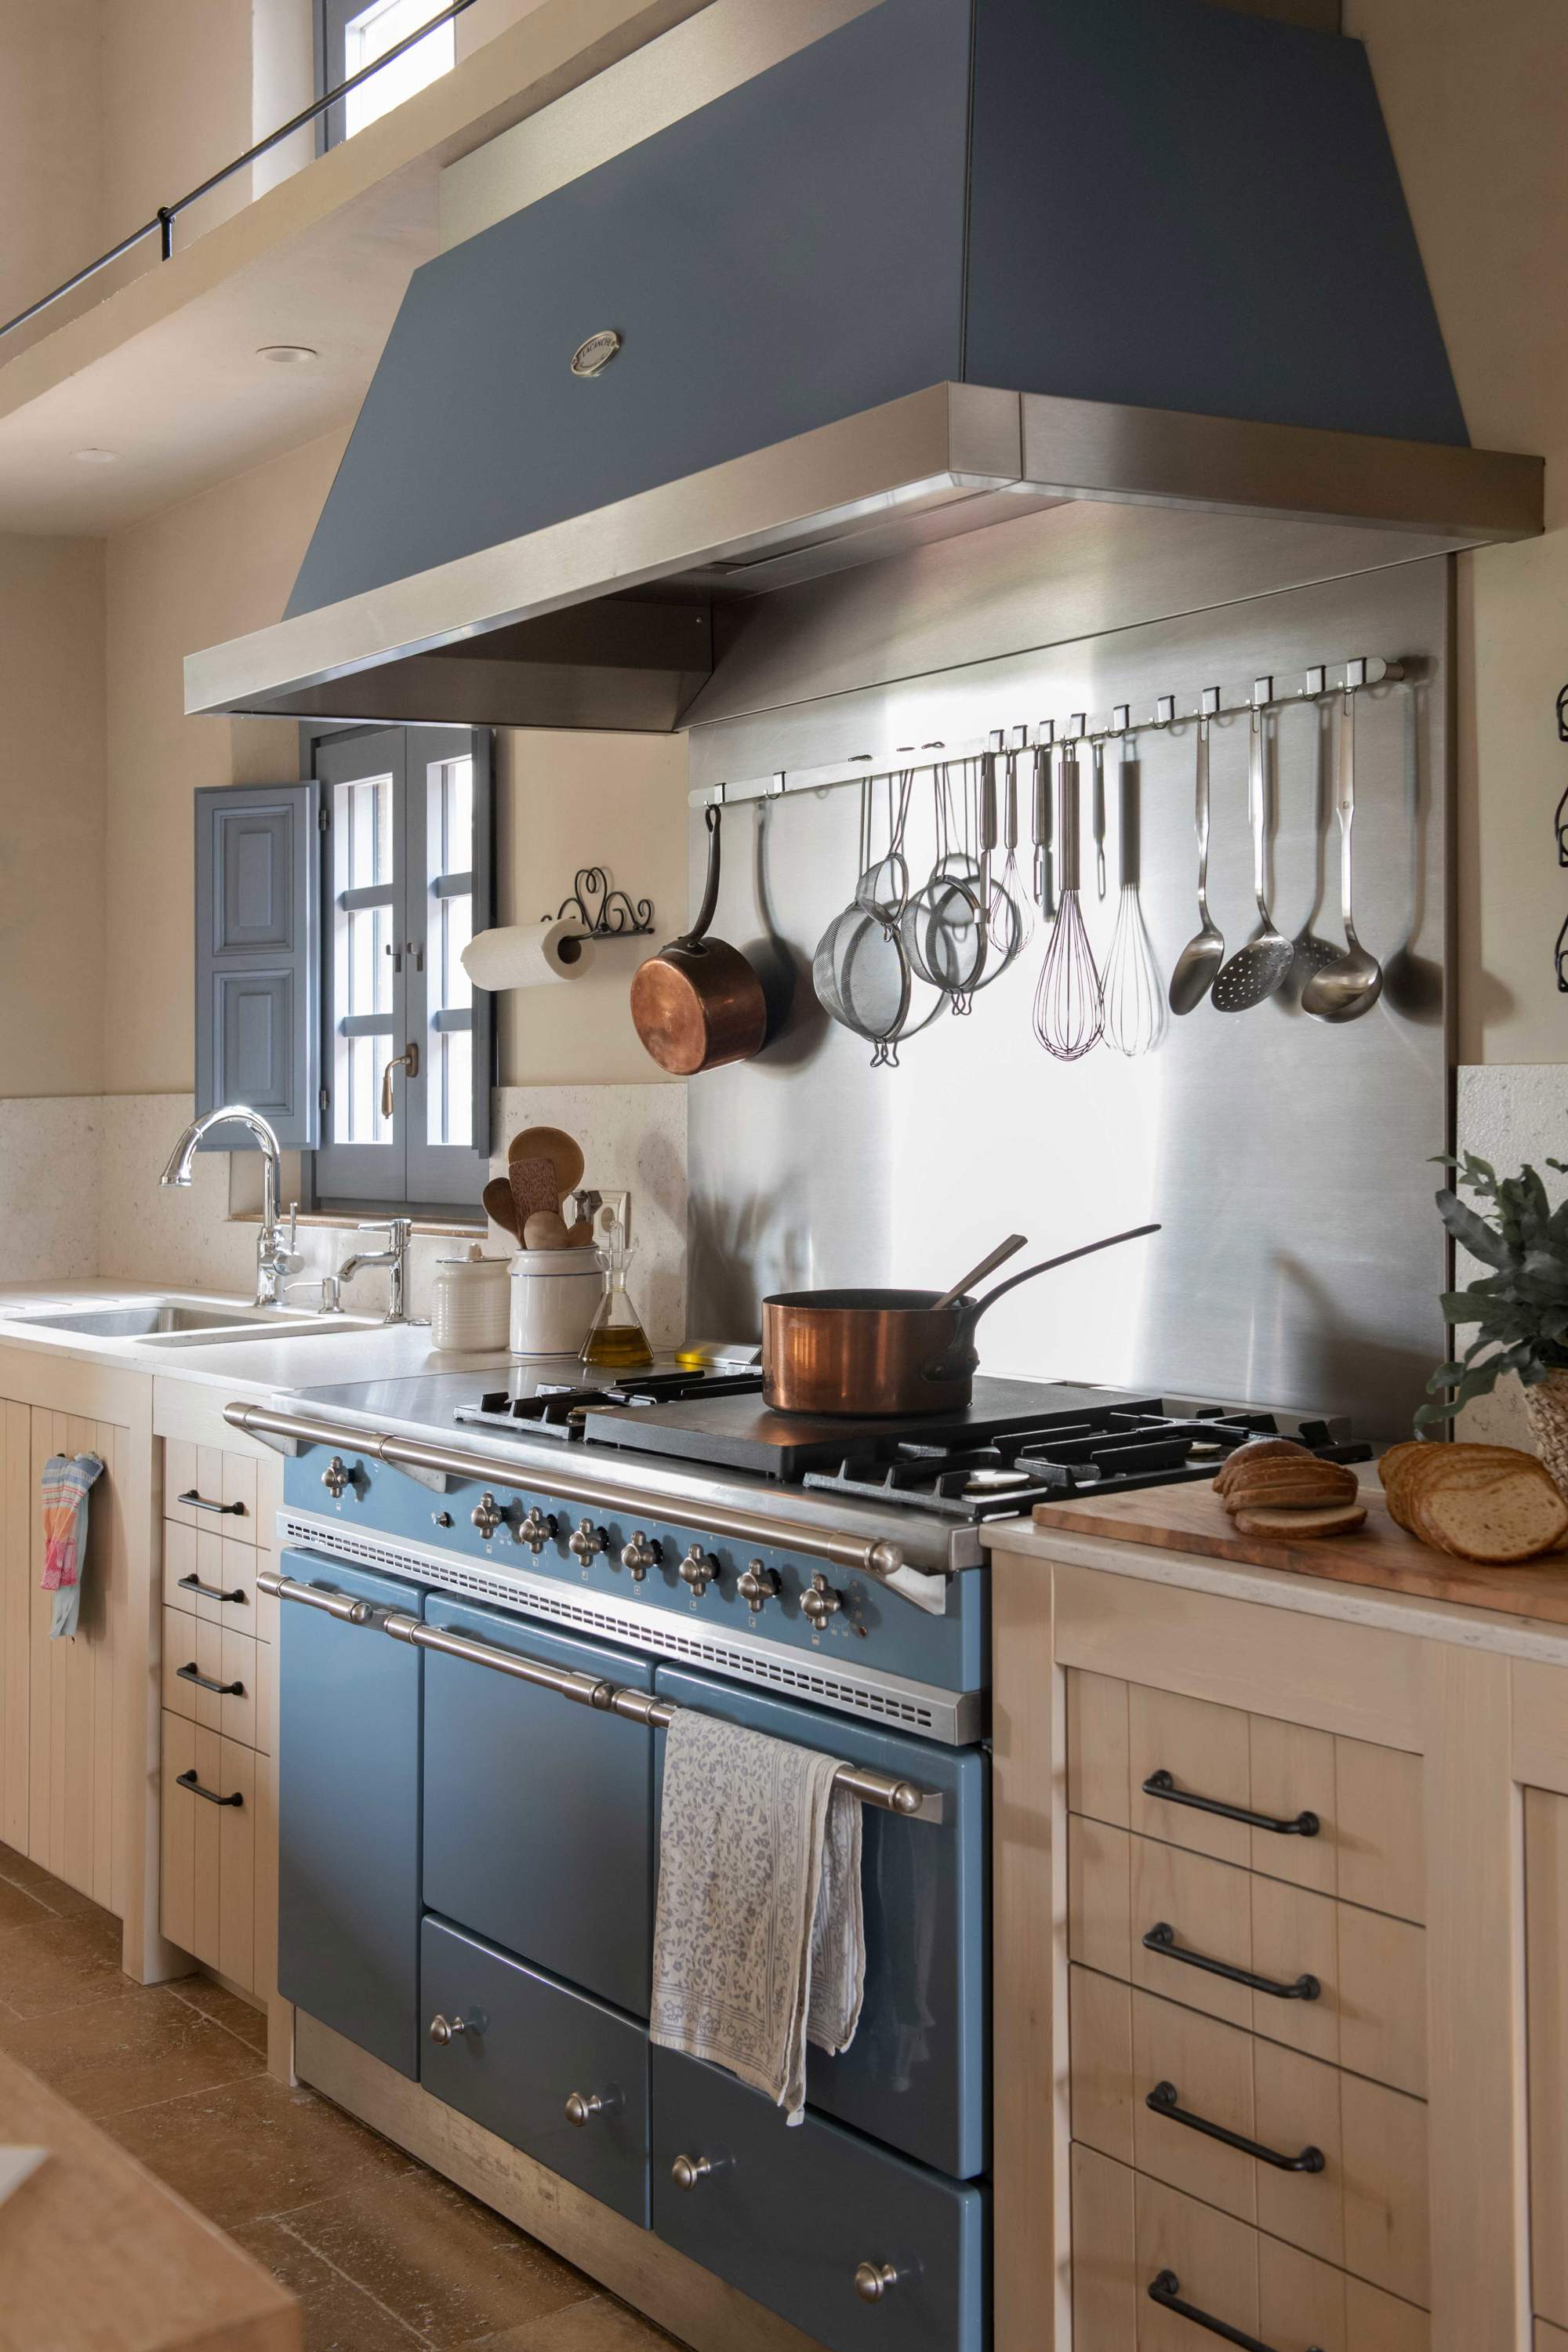 Cocina rústica con utensilios de cobre y típica cocina francesa industrial en azul